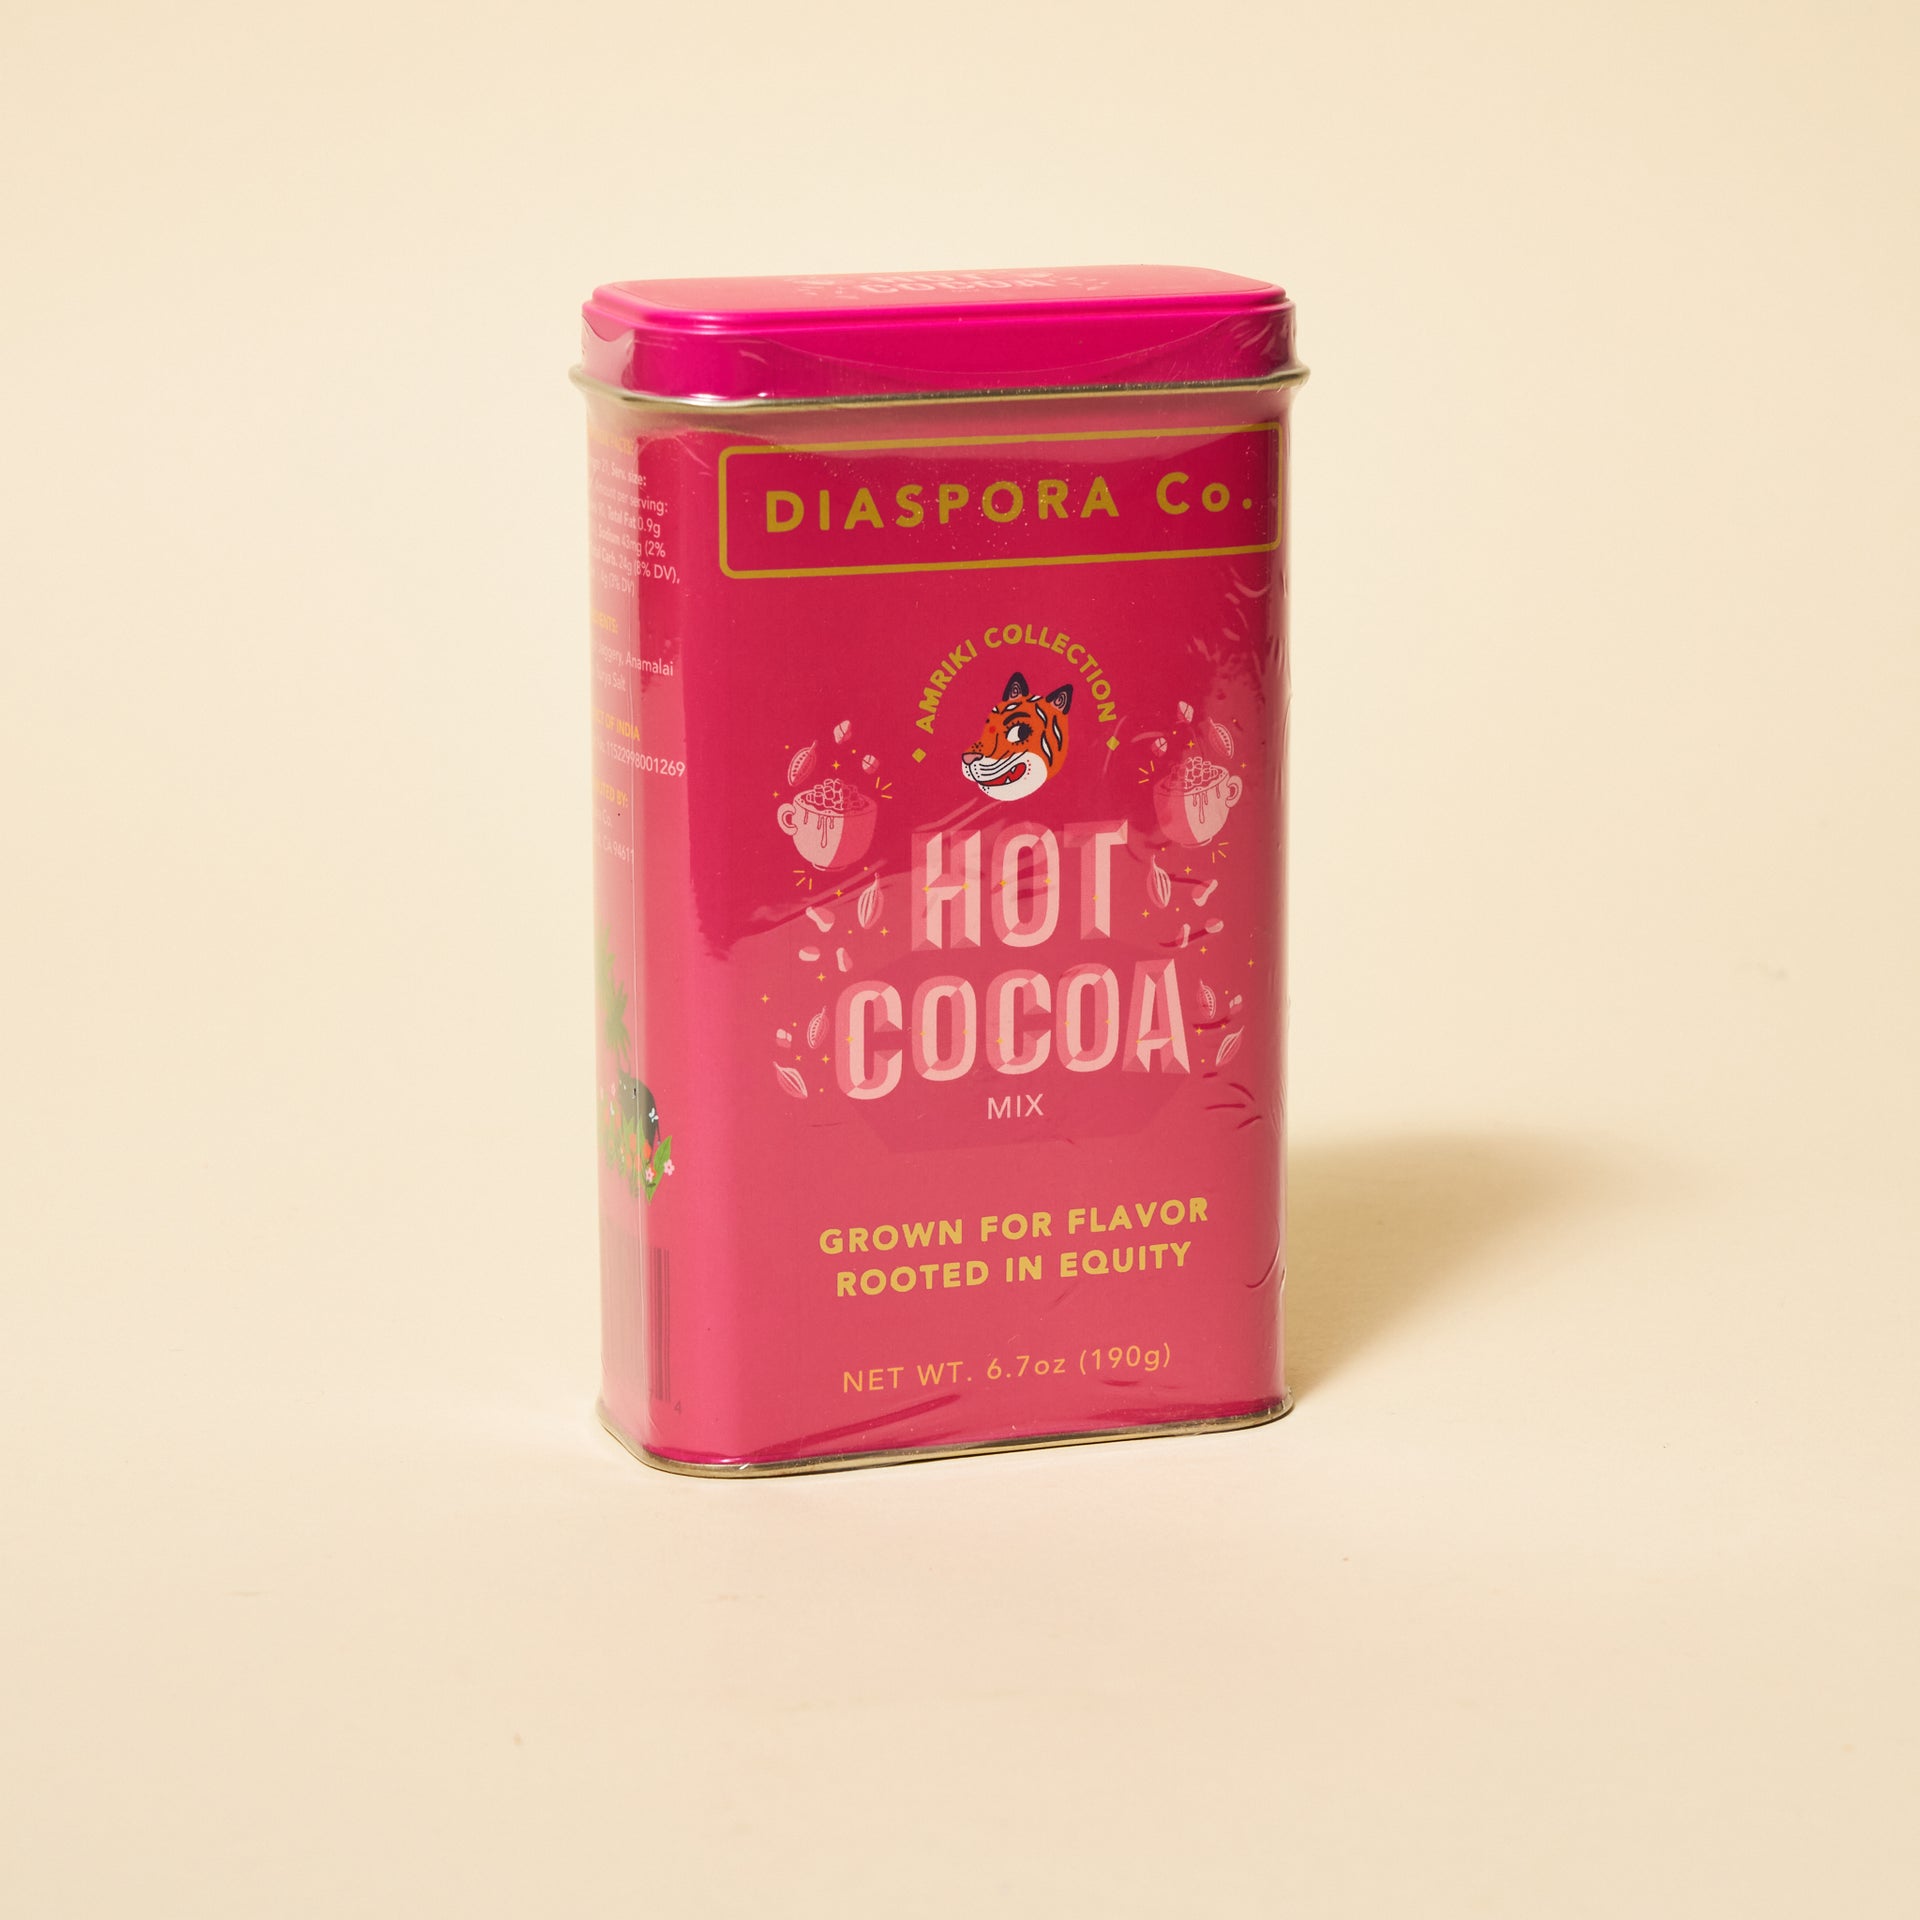 Diaspora Co. Hot Cocoa